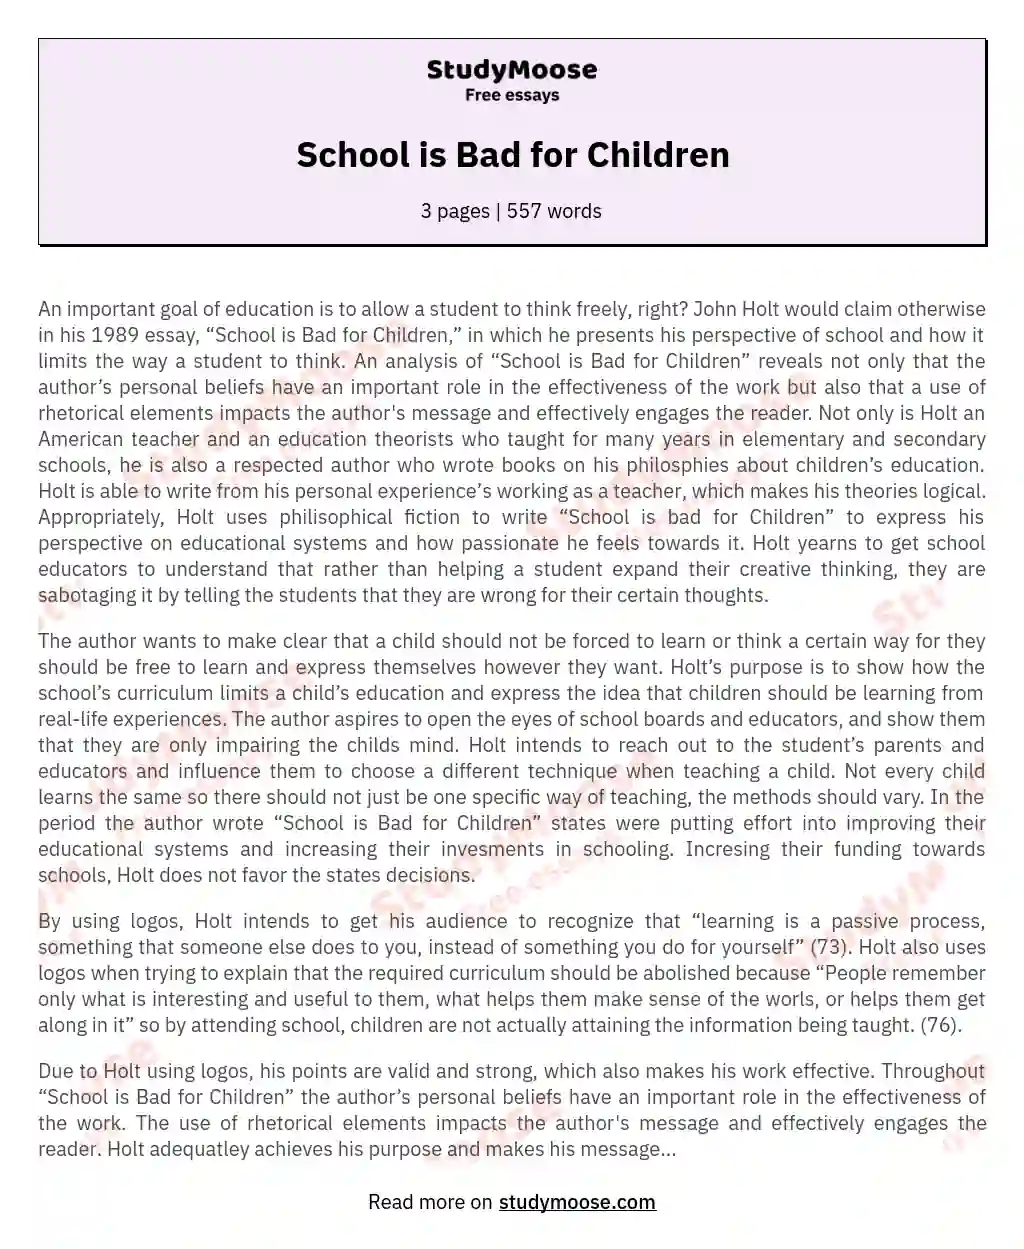 School is Bad for Children essay